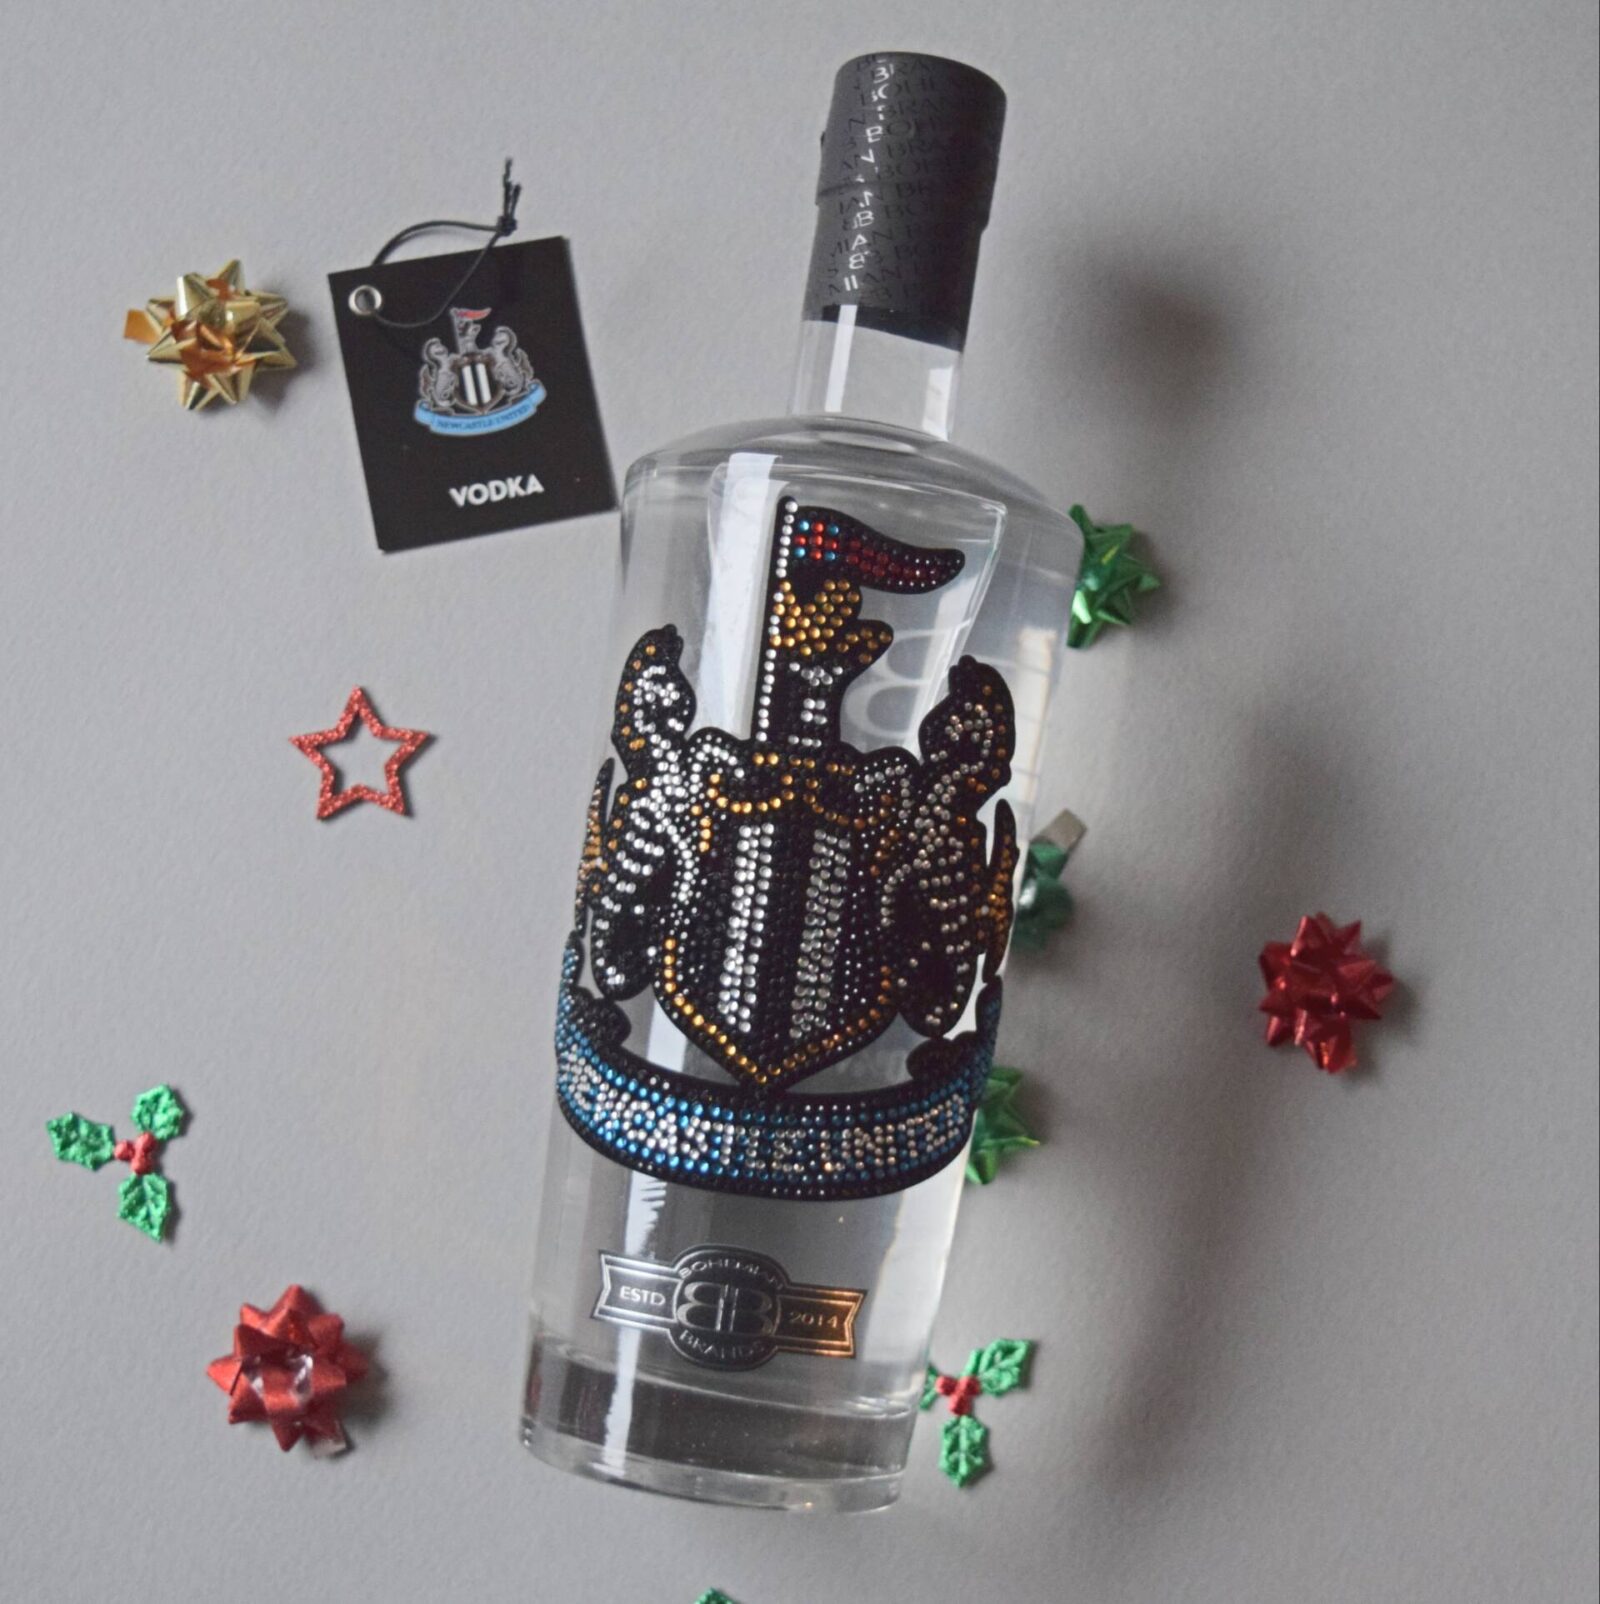 Newcastle-United-vodka